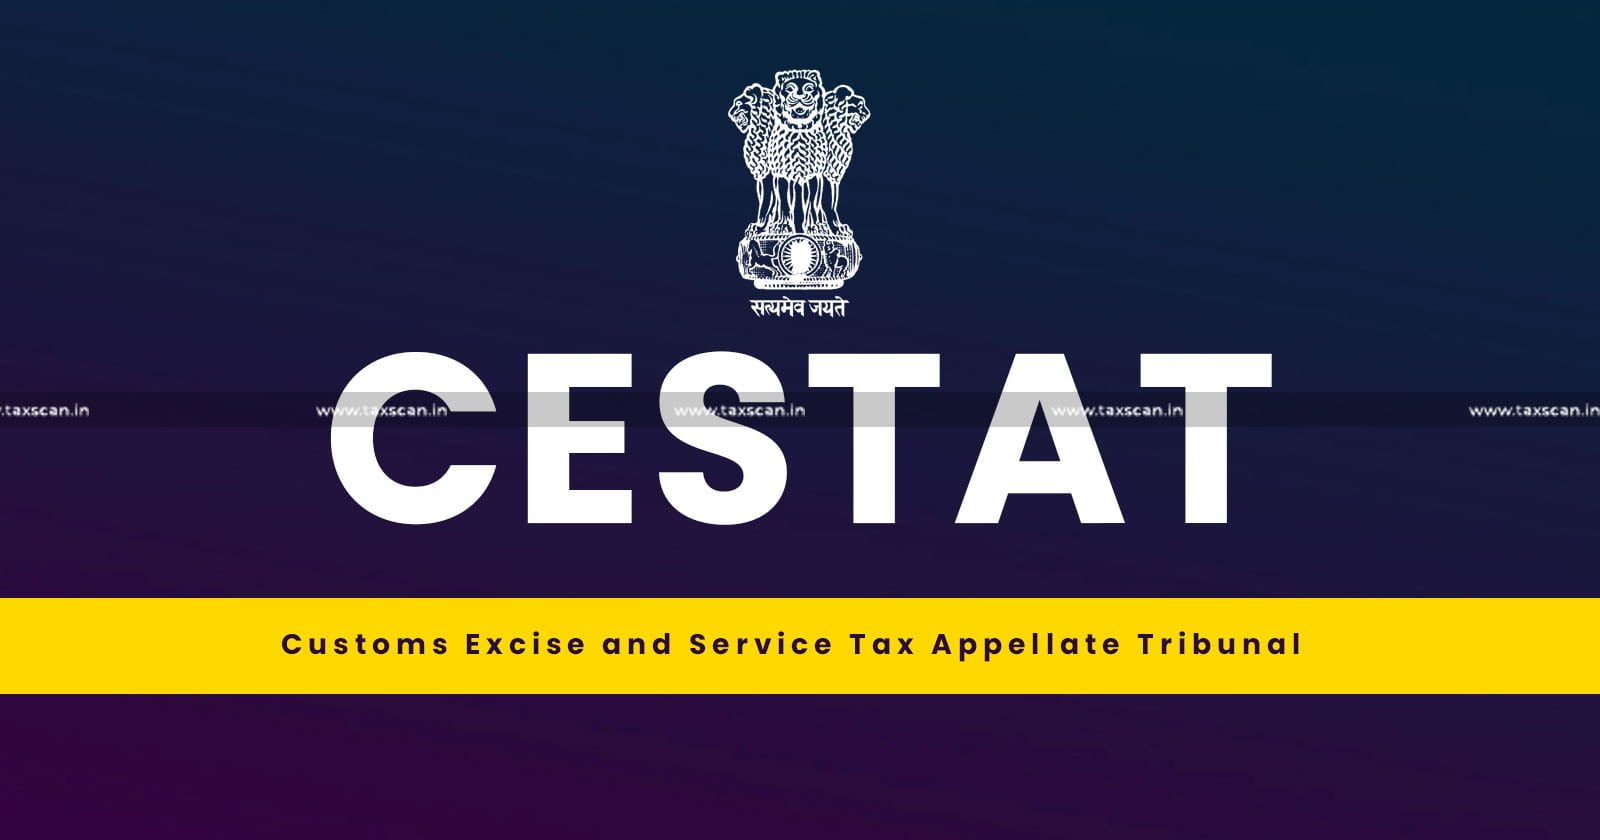 No Tax Proceedings - Dead Person - CESTAT - Service Tax - Customs - taxscan